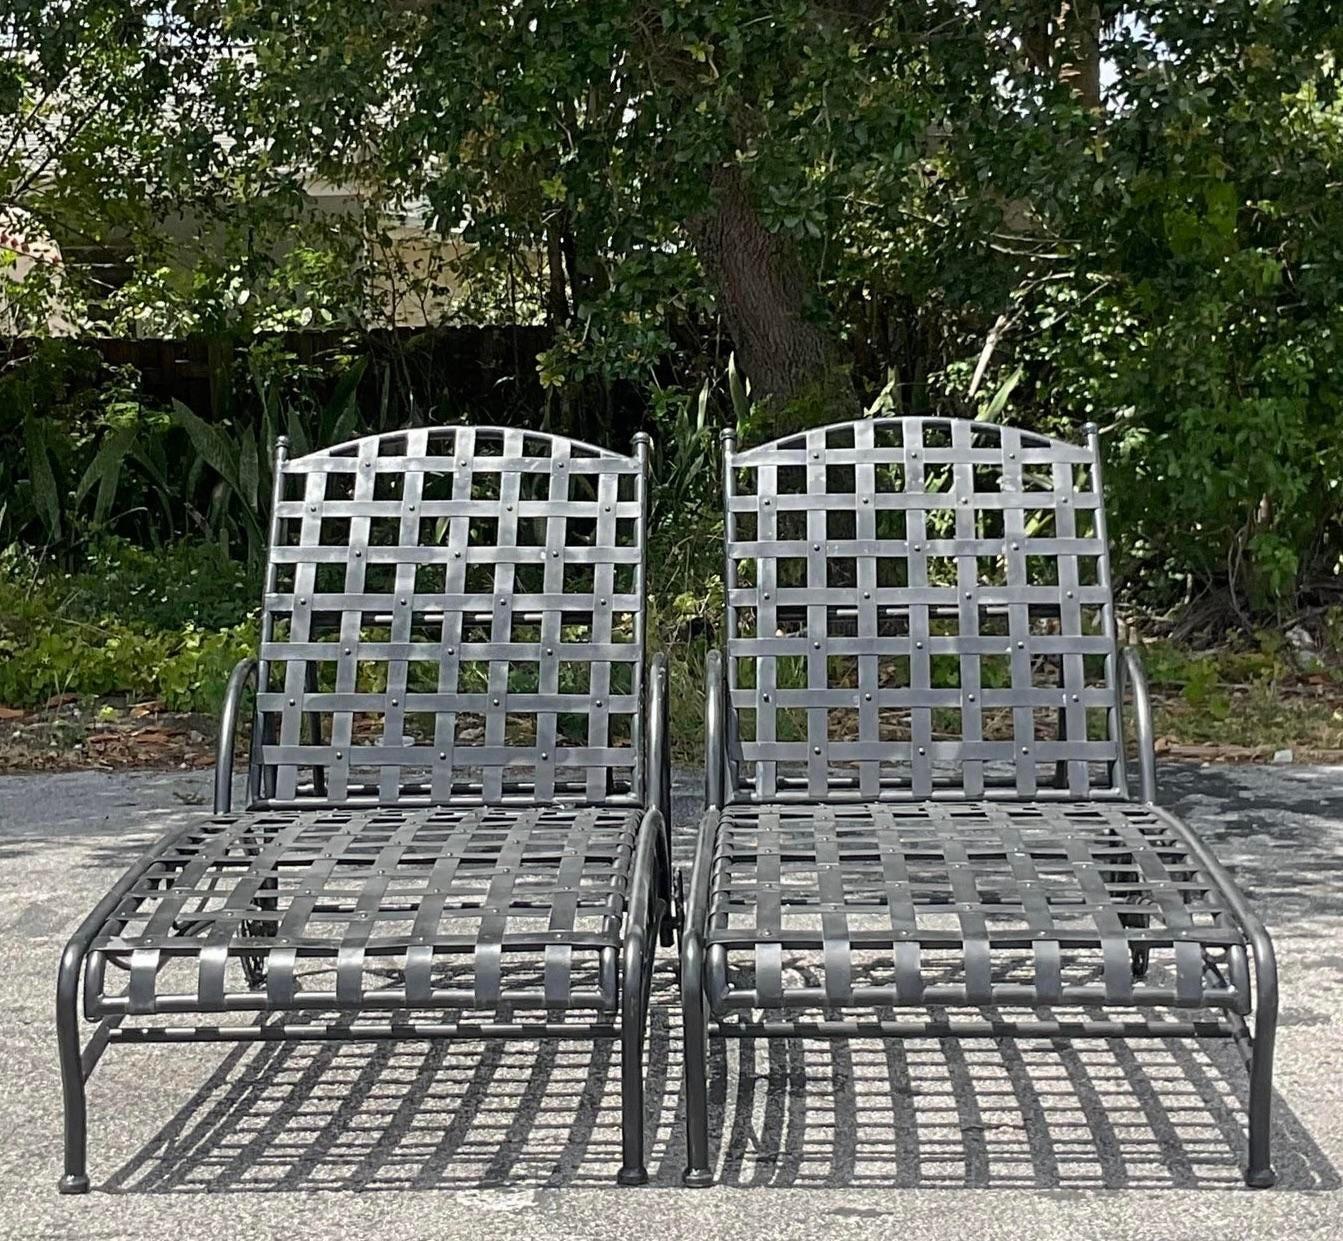 Entspannen Sie sich stilvoll mit diesem Paar schmiedeeiserner Chaiselounge-Sessel im Boho-Stil. Diese Stühle, die böhmisches Flair mit amerikanischer Handwerkskunst verbinden, bieten sowohl Komfort als auch Charakter und sind damit eine